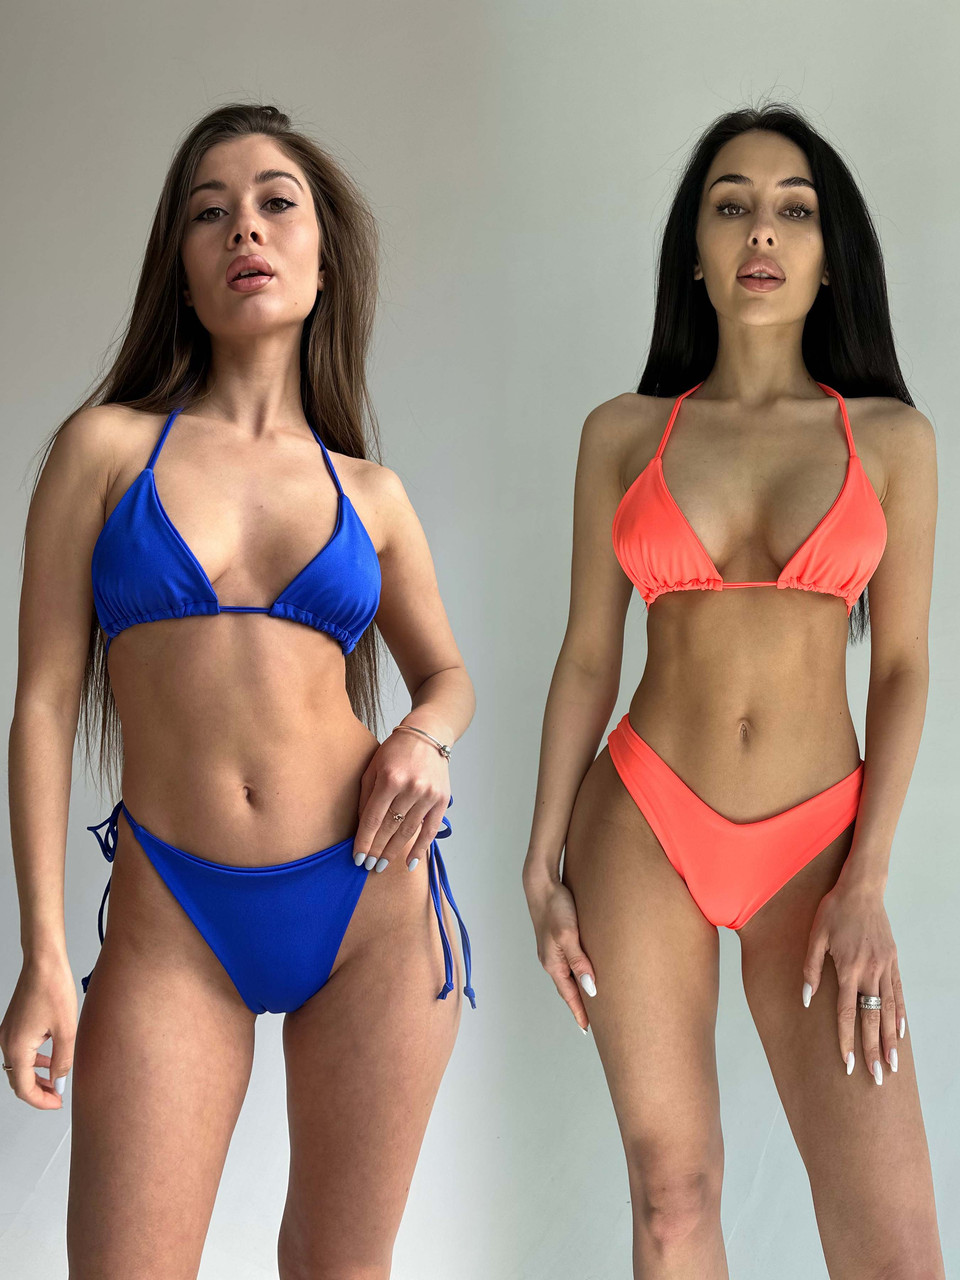 Комплект жіночий (купальник та купальник) - синій та помаранчевий